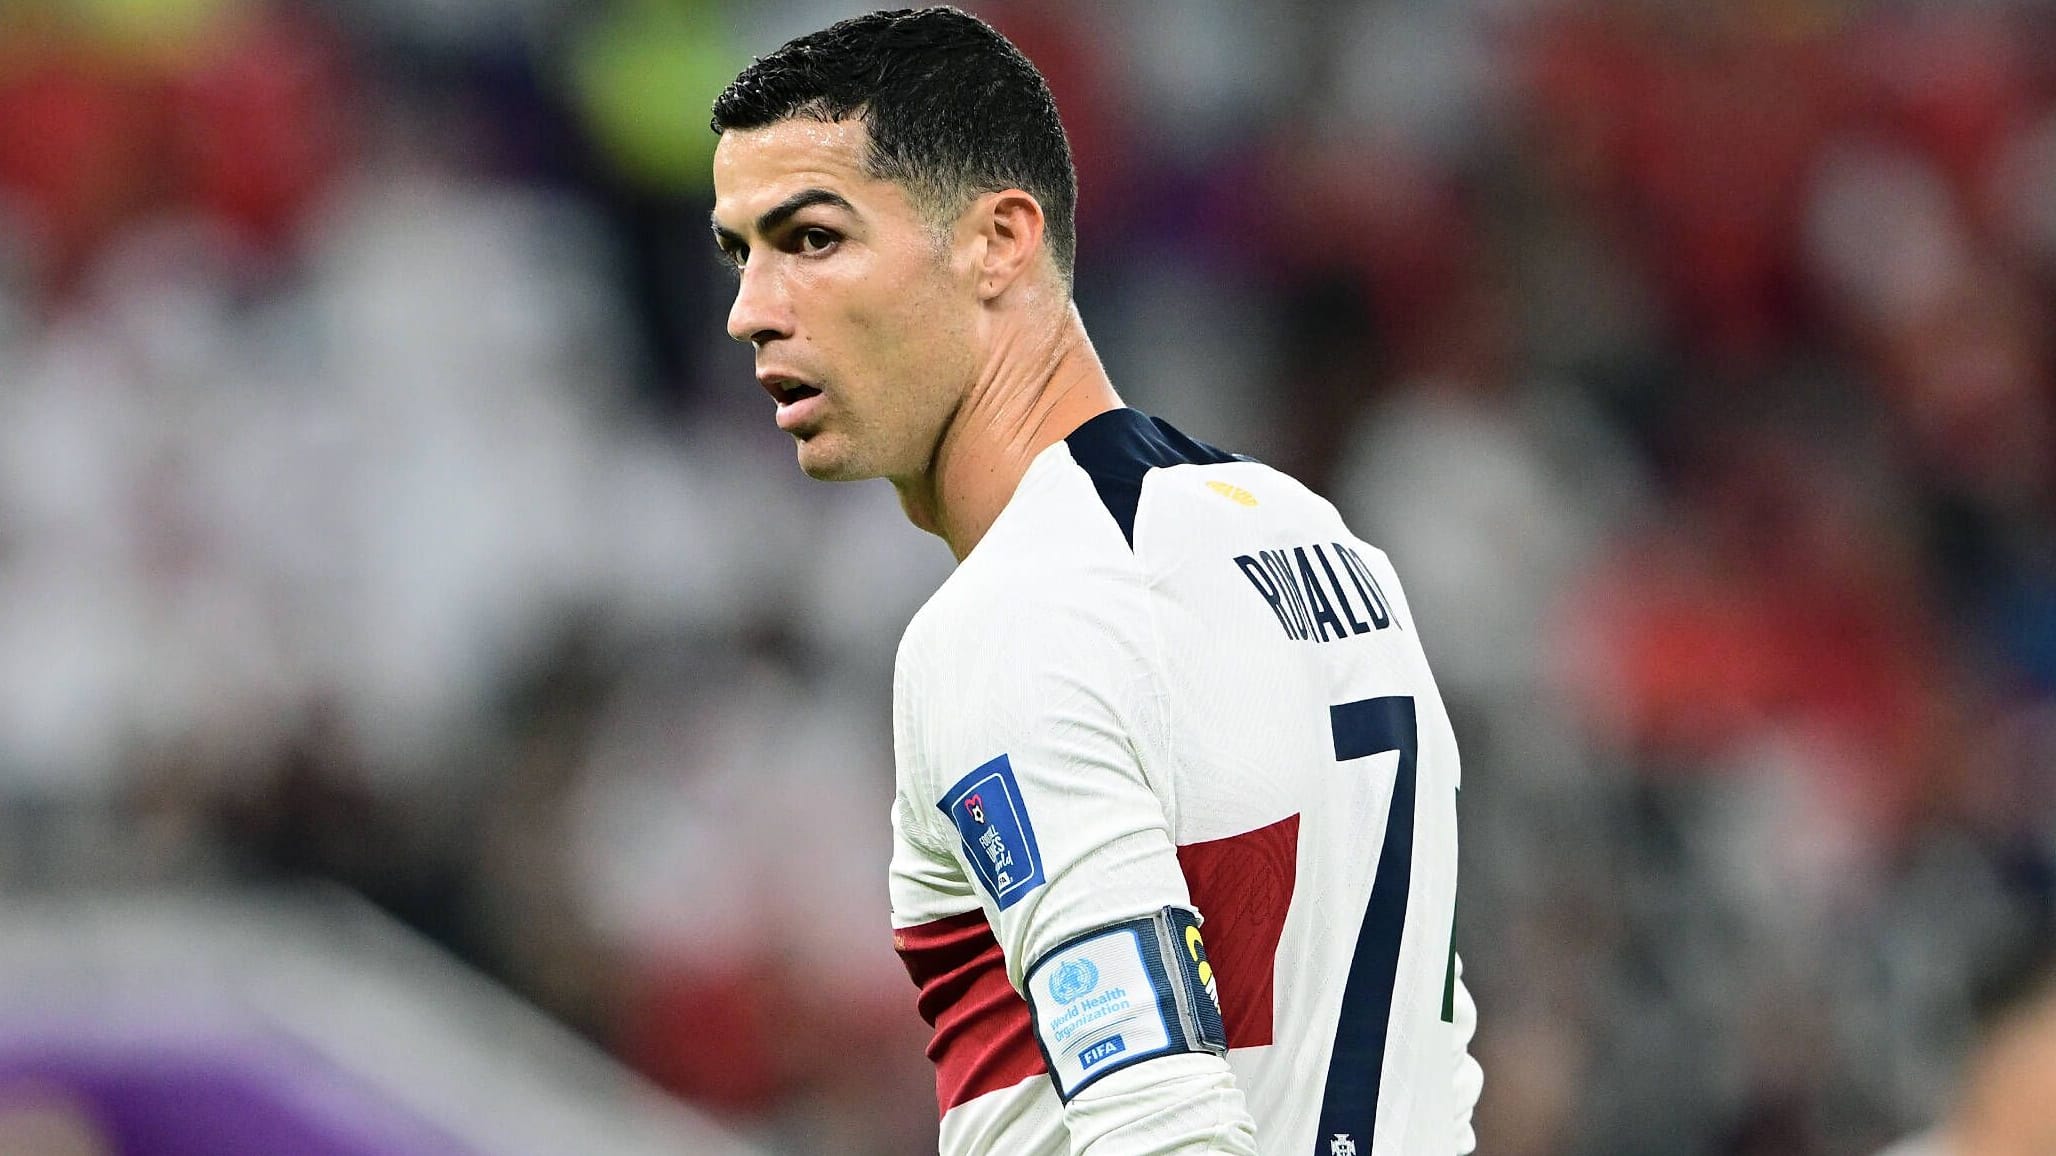 Ohne Gratulation: Ronaldo nach Messis WM-Titel untergetaucht – wo ist er?